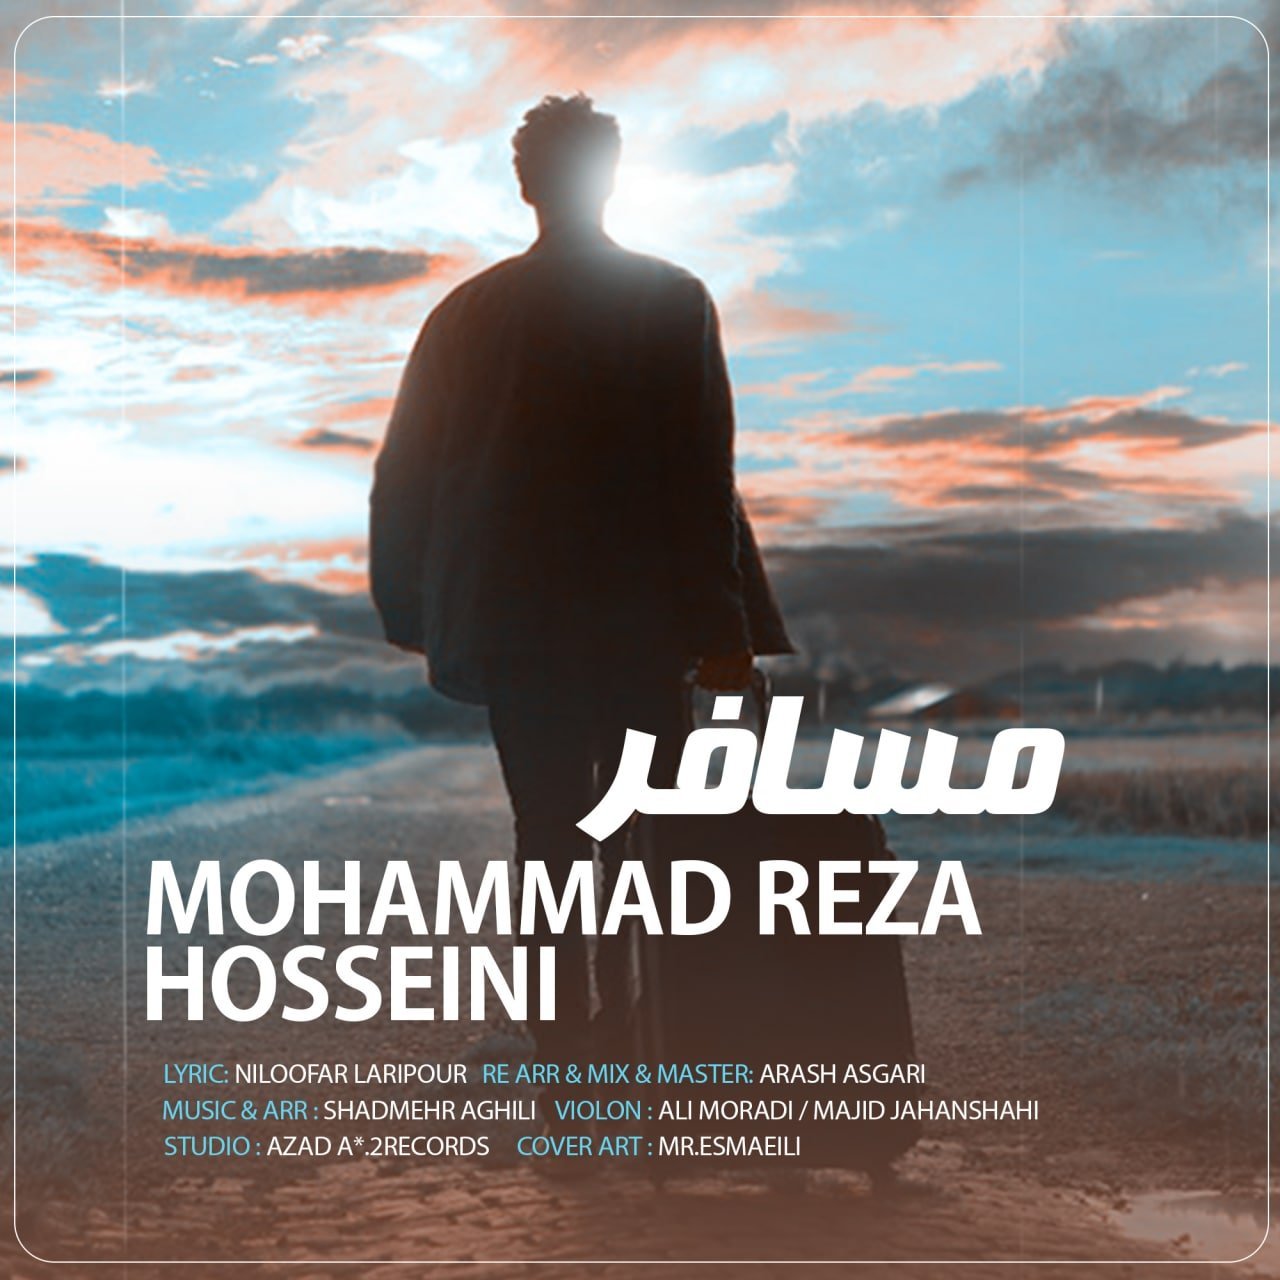 دانلود آهنگ جدید محمدرضا حسینی با عنوان مسافر